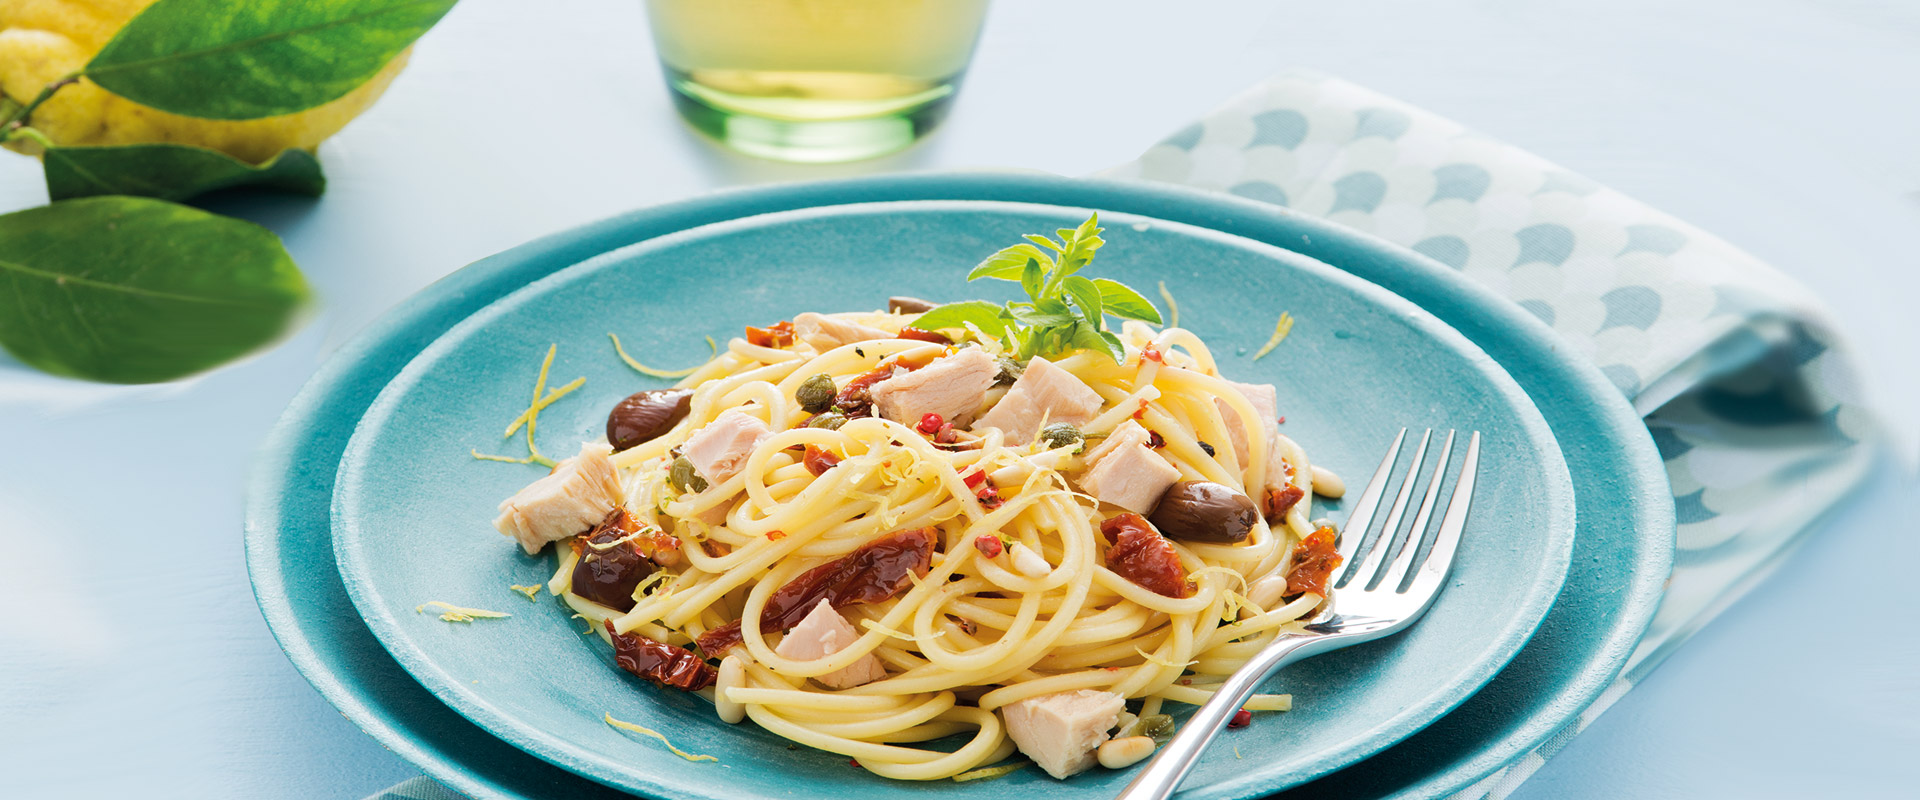 Spaghetti mit Thunfisch und Zitronenschalen | Fratelli Carli DE